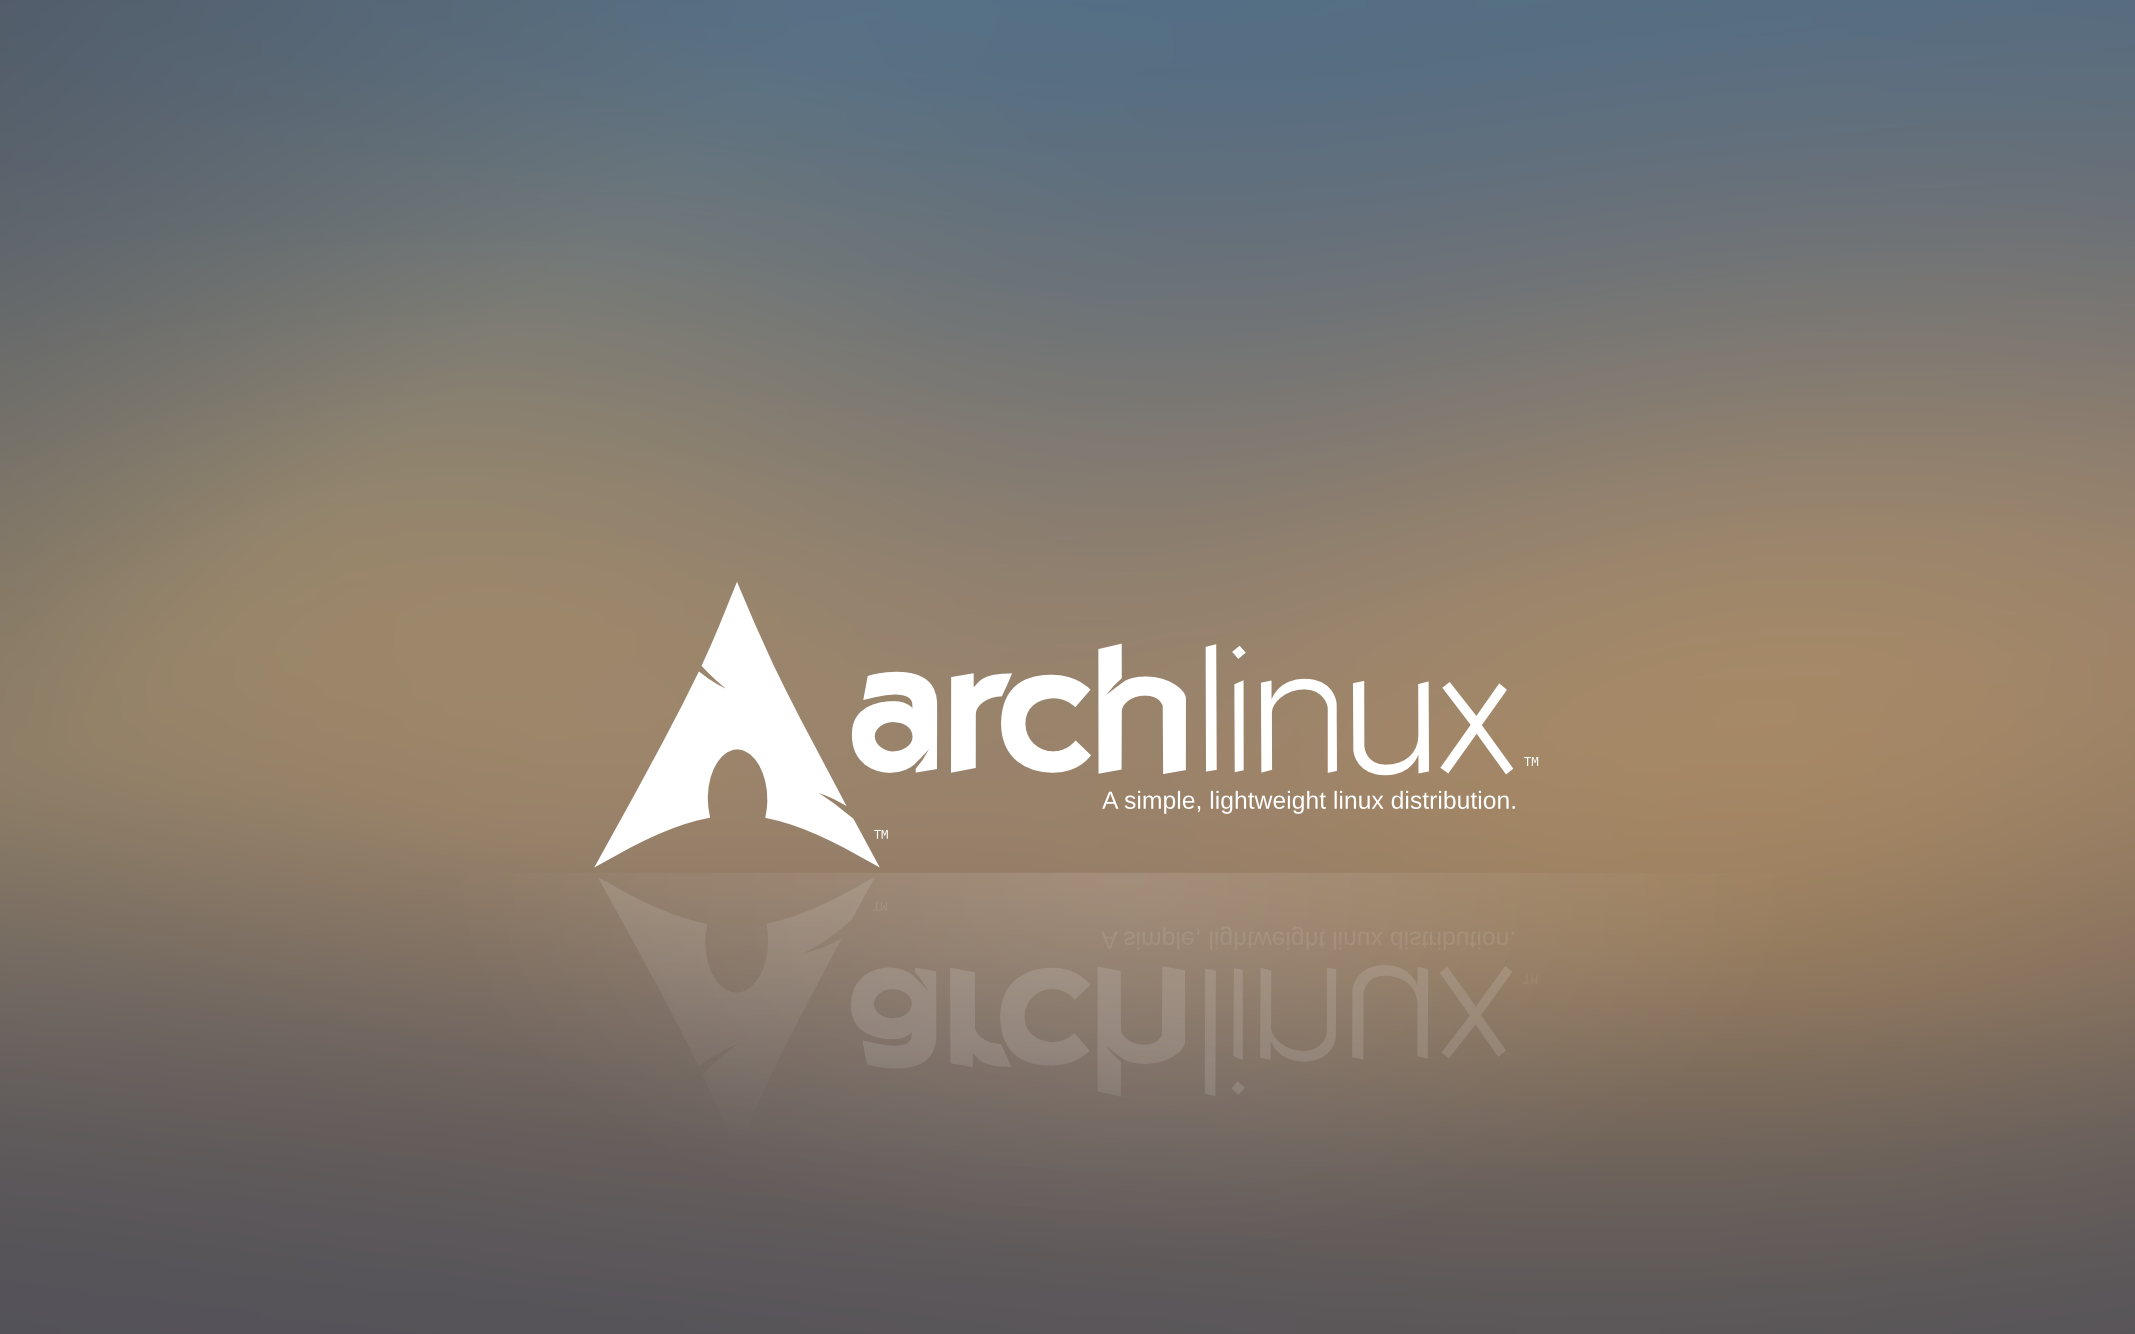 arch linux wallpaper hd,schriftart,himmel,dreieck,grafik,grafikdesign